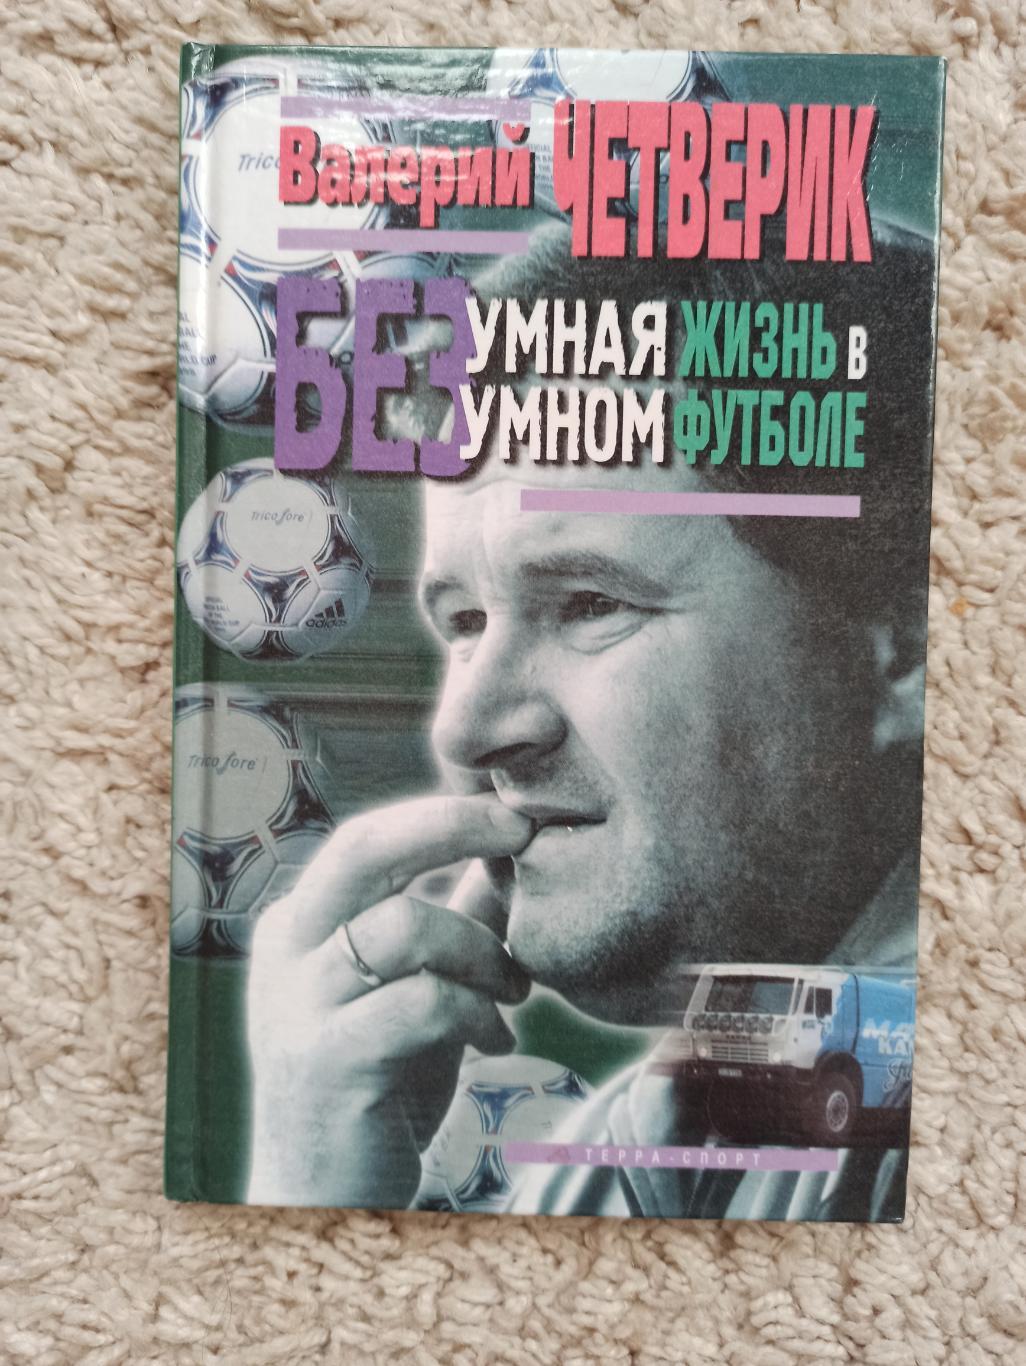 Футбол, Валерий Четверик, Безумная жизнь в безумном футболе, редкая книга